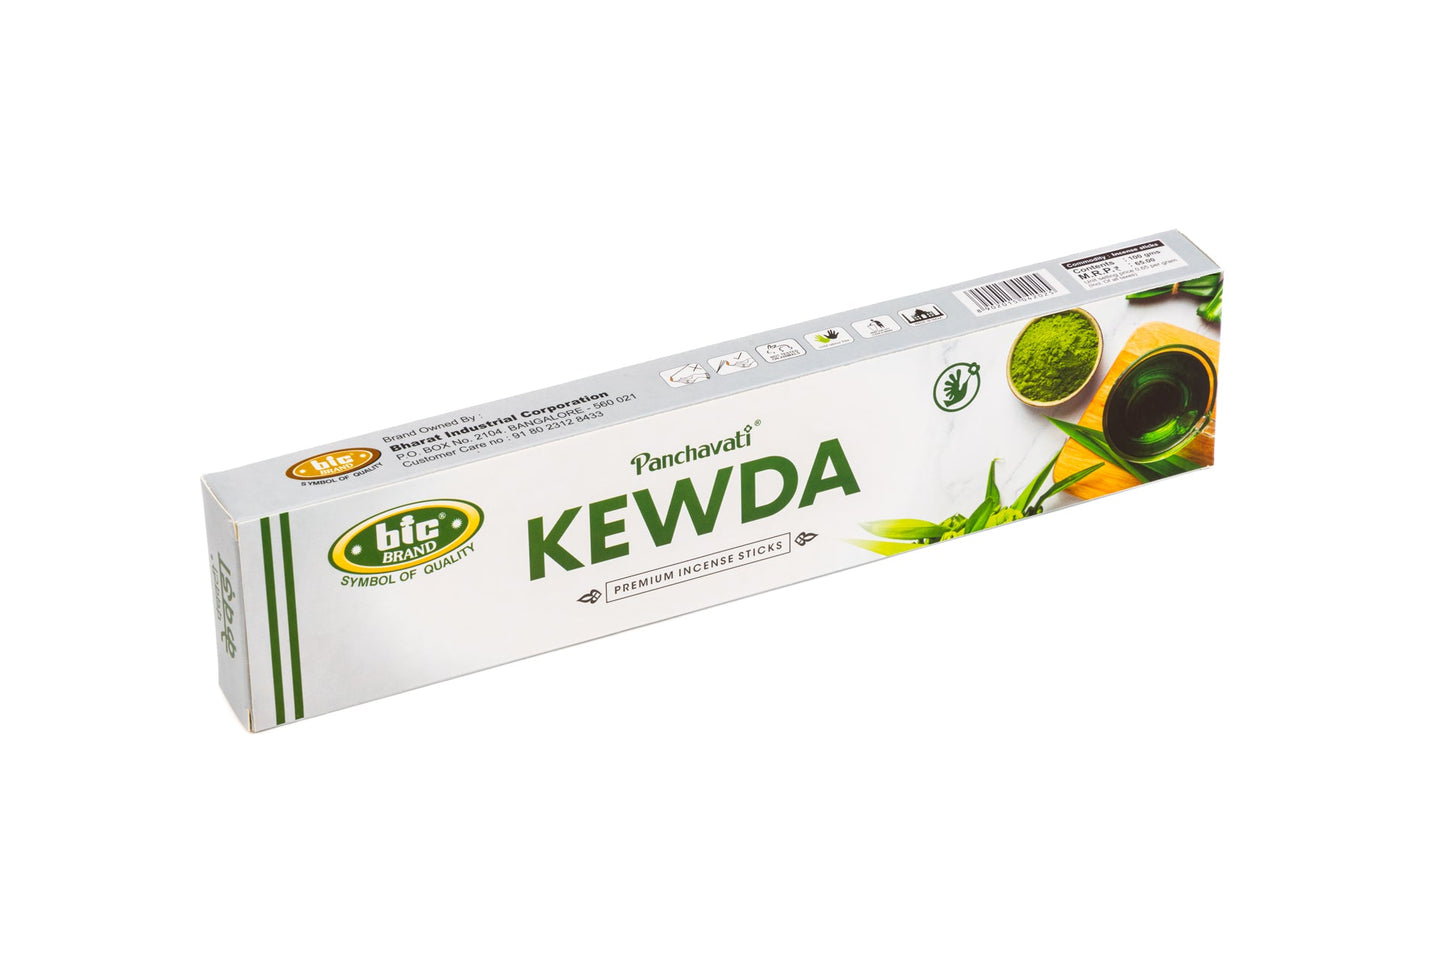 Kewda